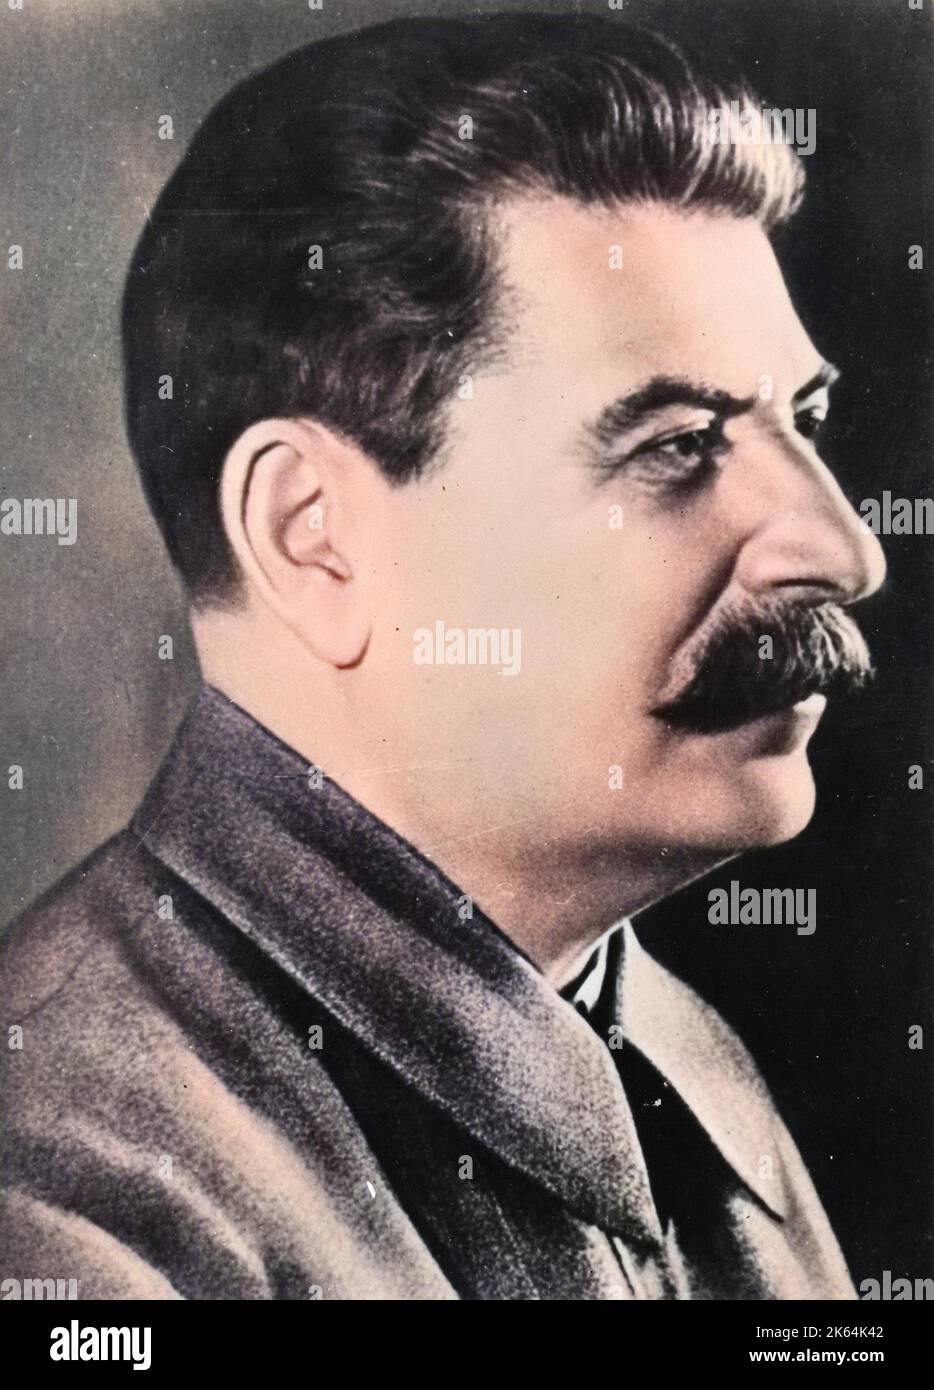 Joseph Stalin, Generalsekretär der Kommunistischen Partei Sowjetrusslands. Datum: c. 1942 Stockfoto